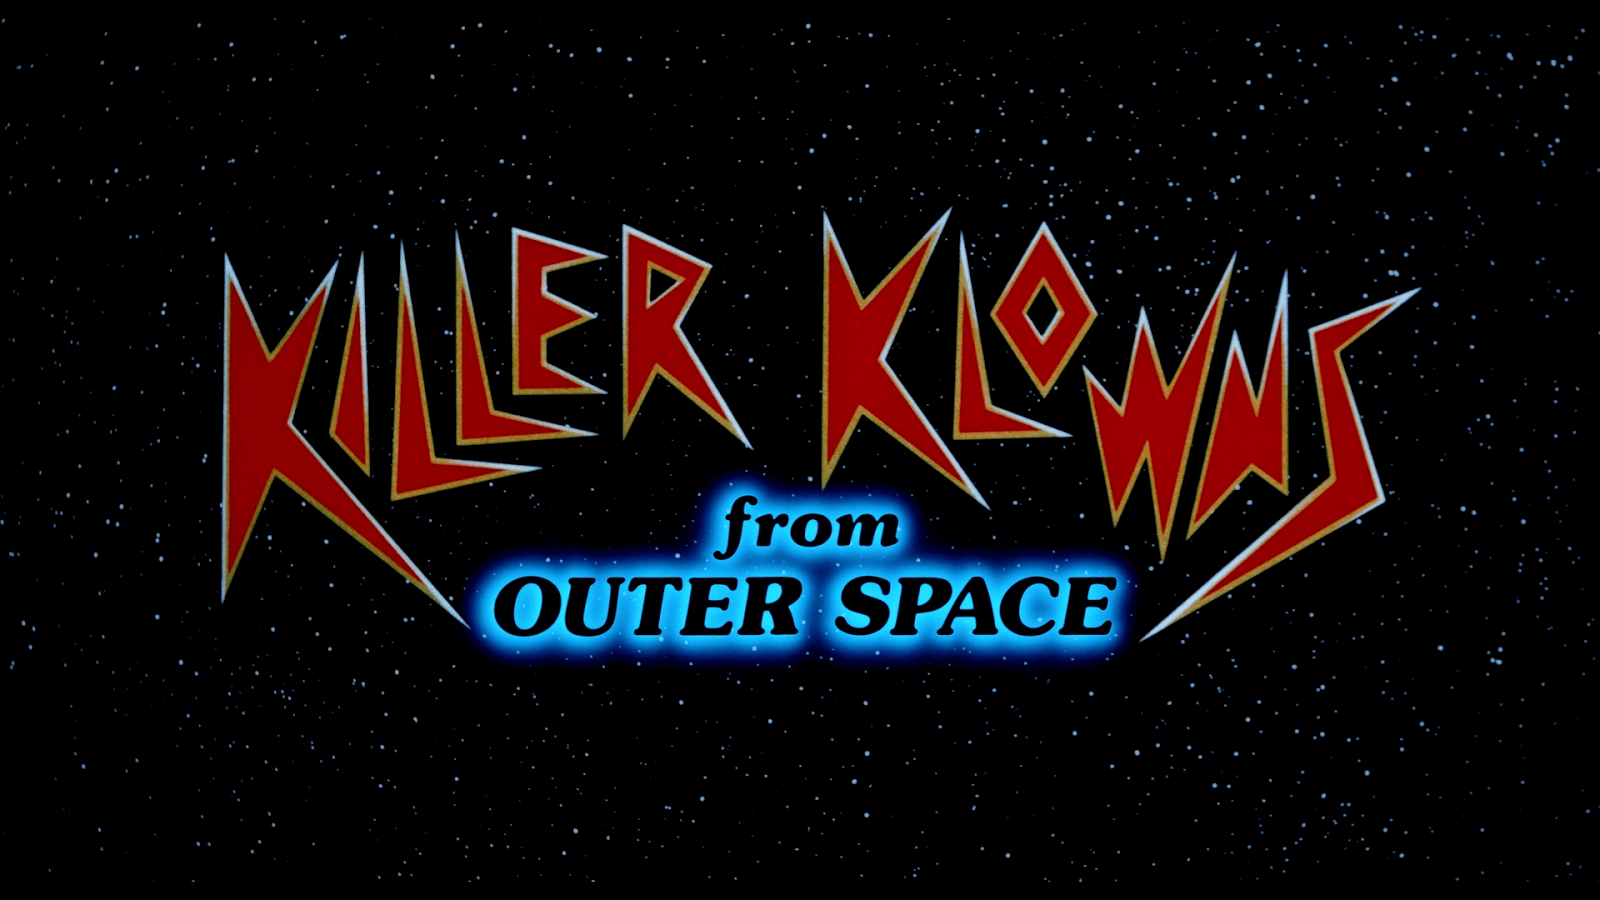 Killer from outer space. Killer Klowns from Outer Space 1988. Killer Klowns from Outer Space. Клоуны-убийцы из космоса. Killer Klowns from Outer Space poster.